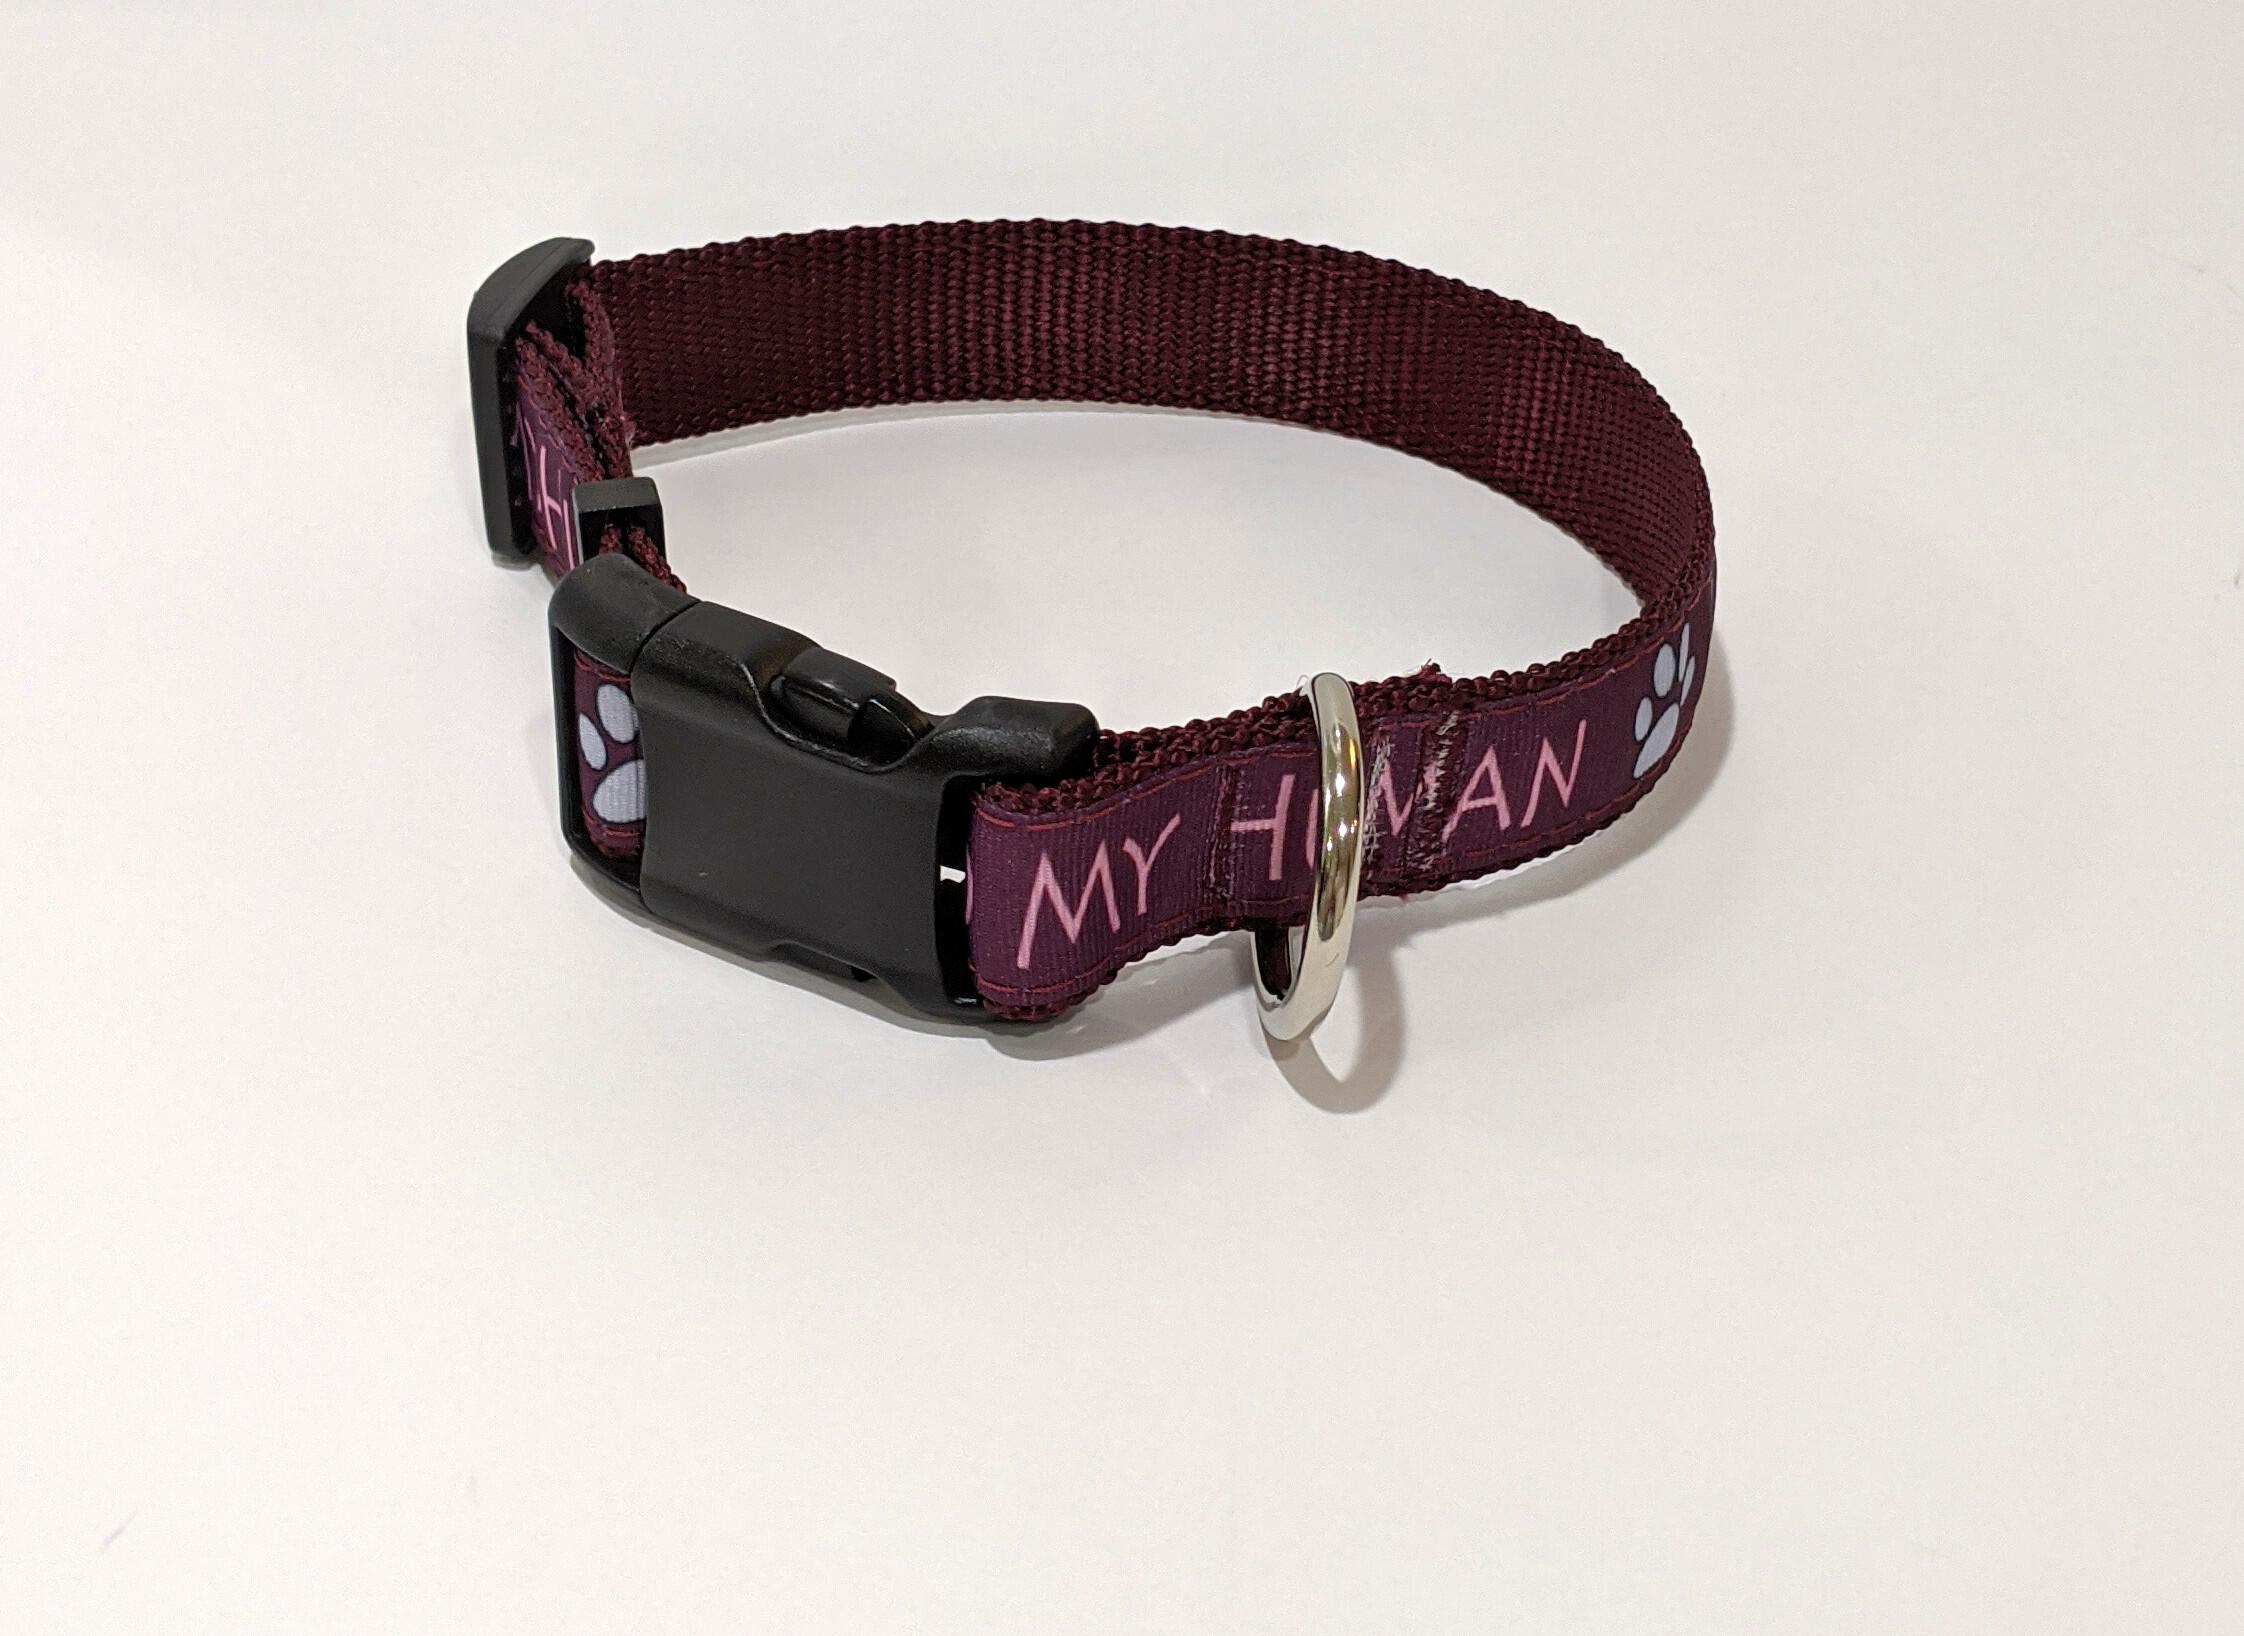 1 inch dog collar